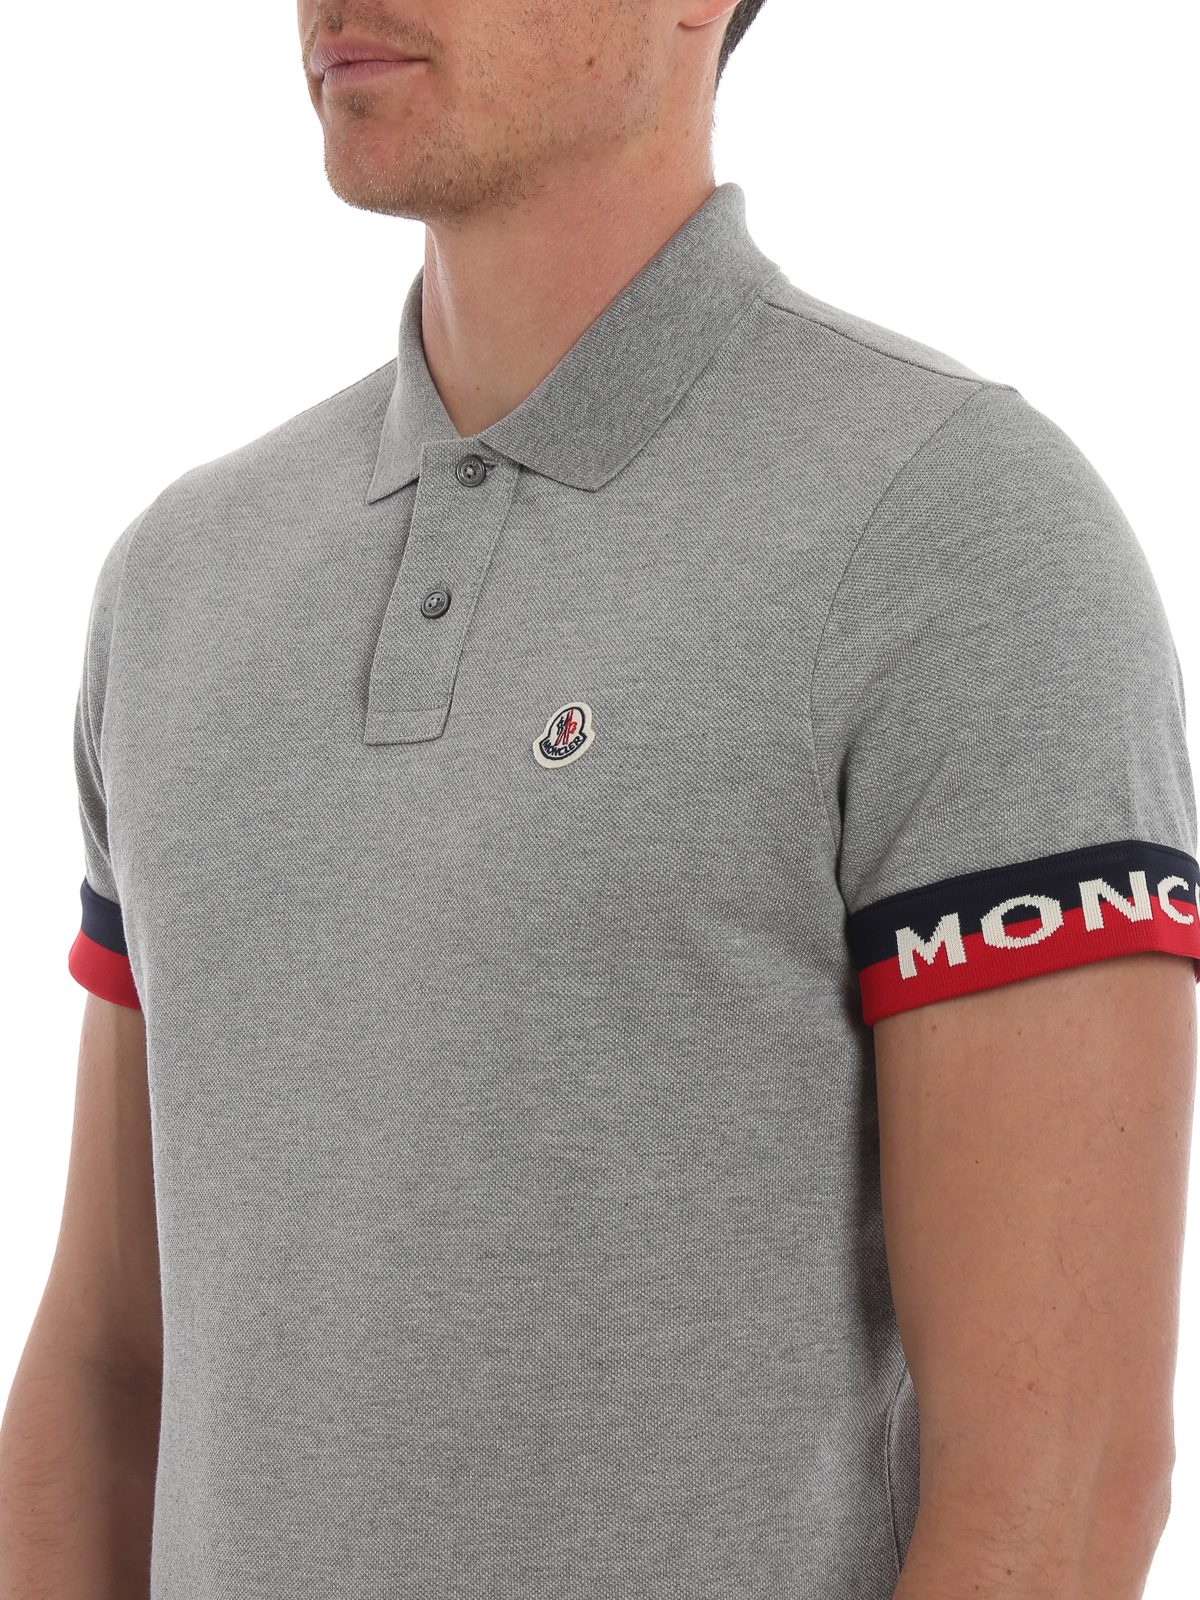 moncler polo shirt grey